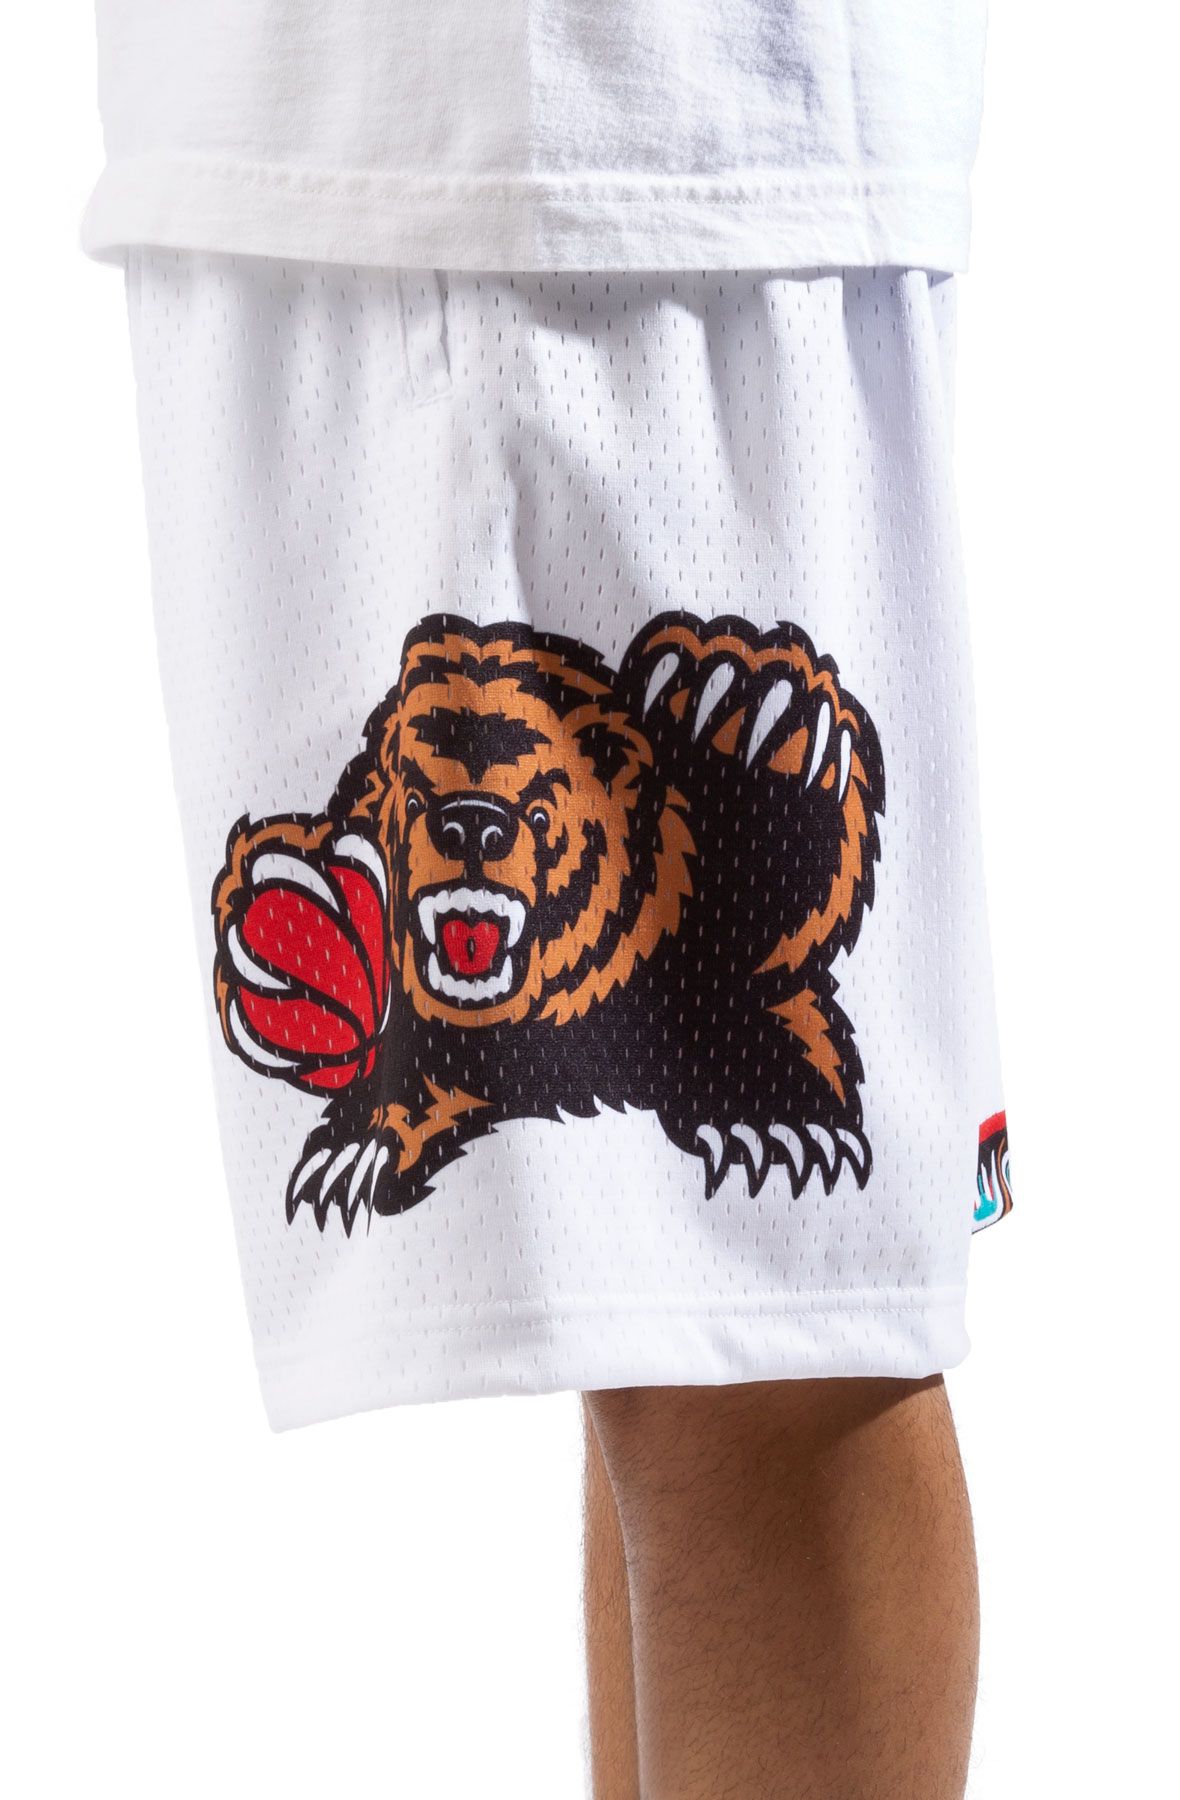 authentic vancouver grizzlies shorts